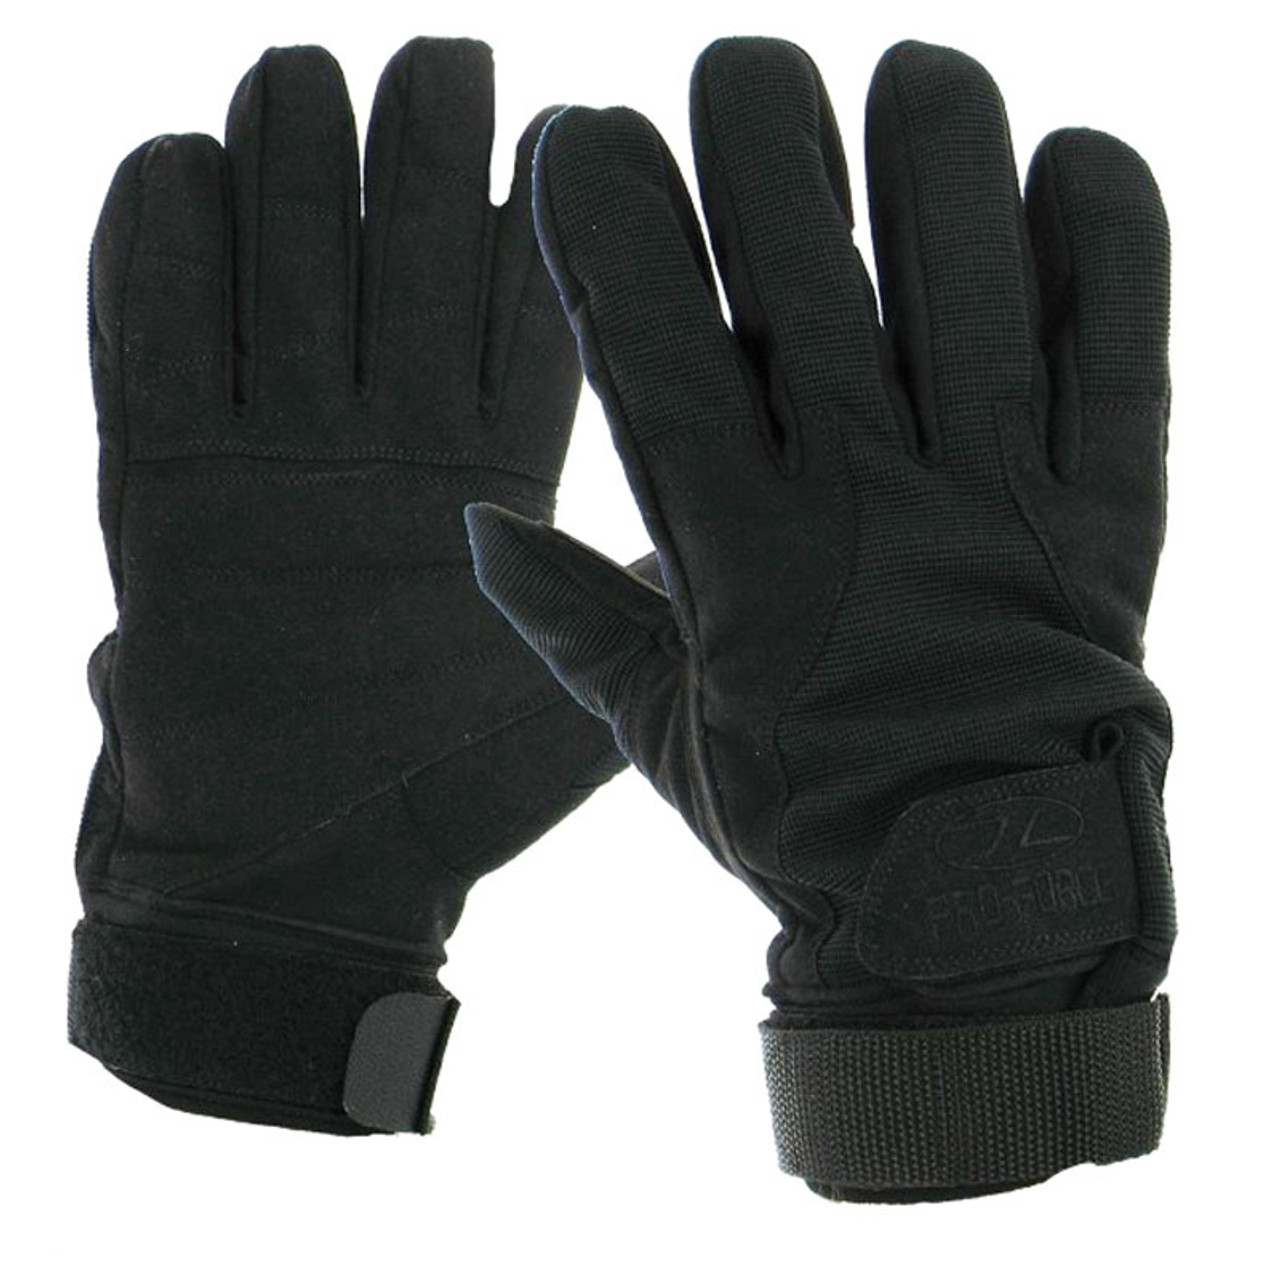 Highlander Mission Gloves